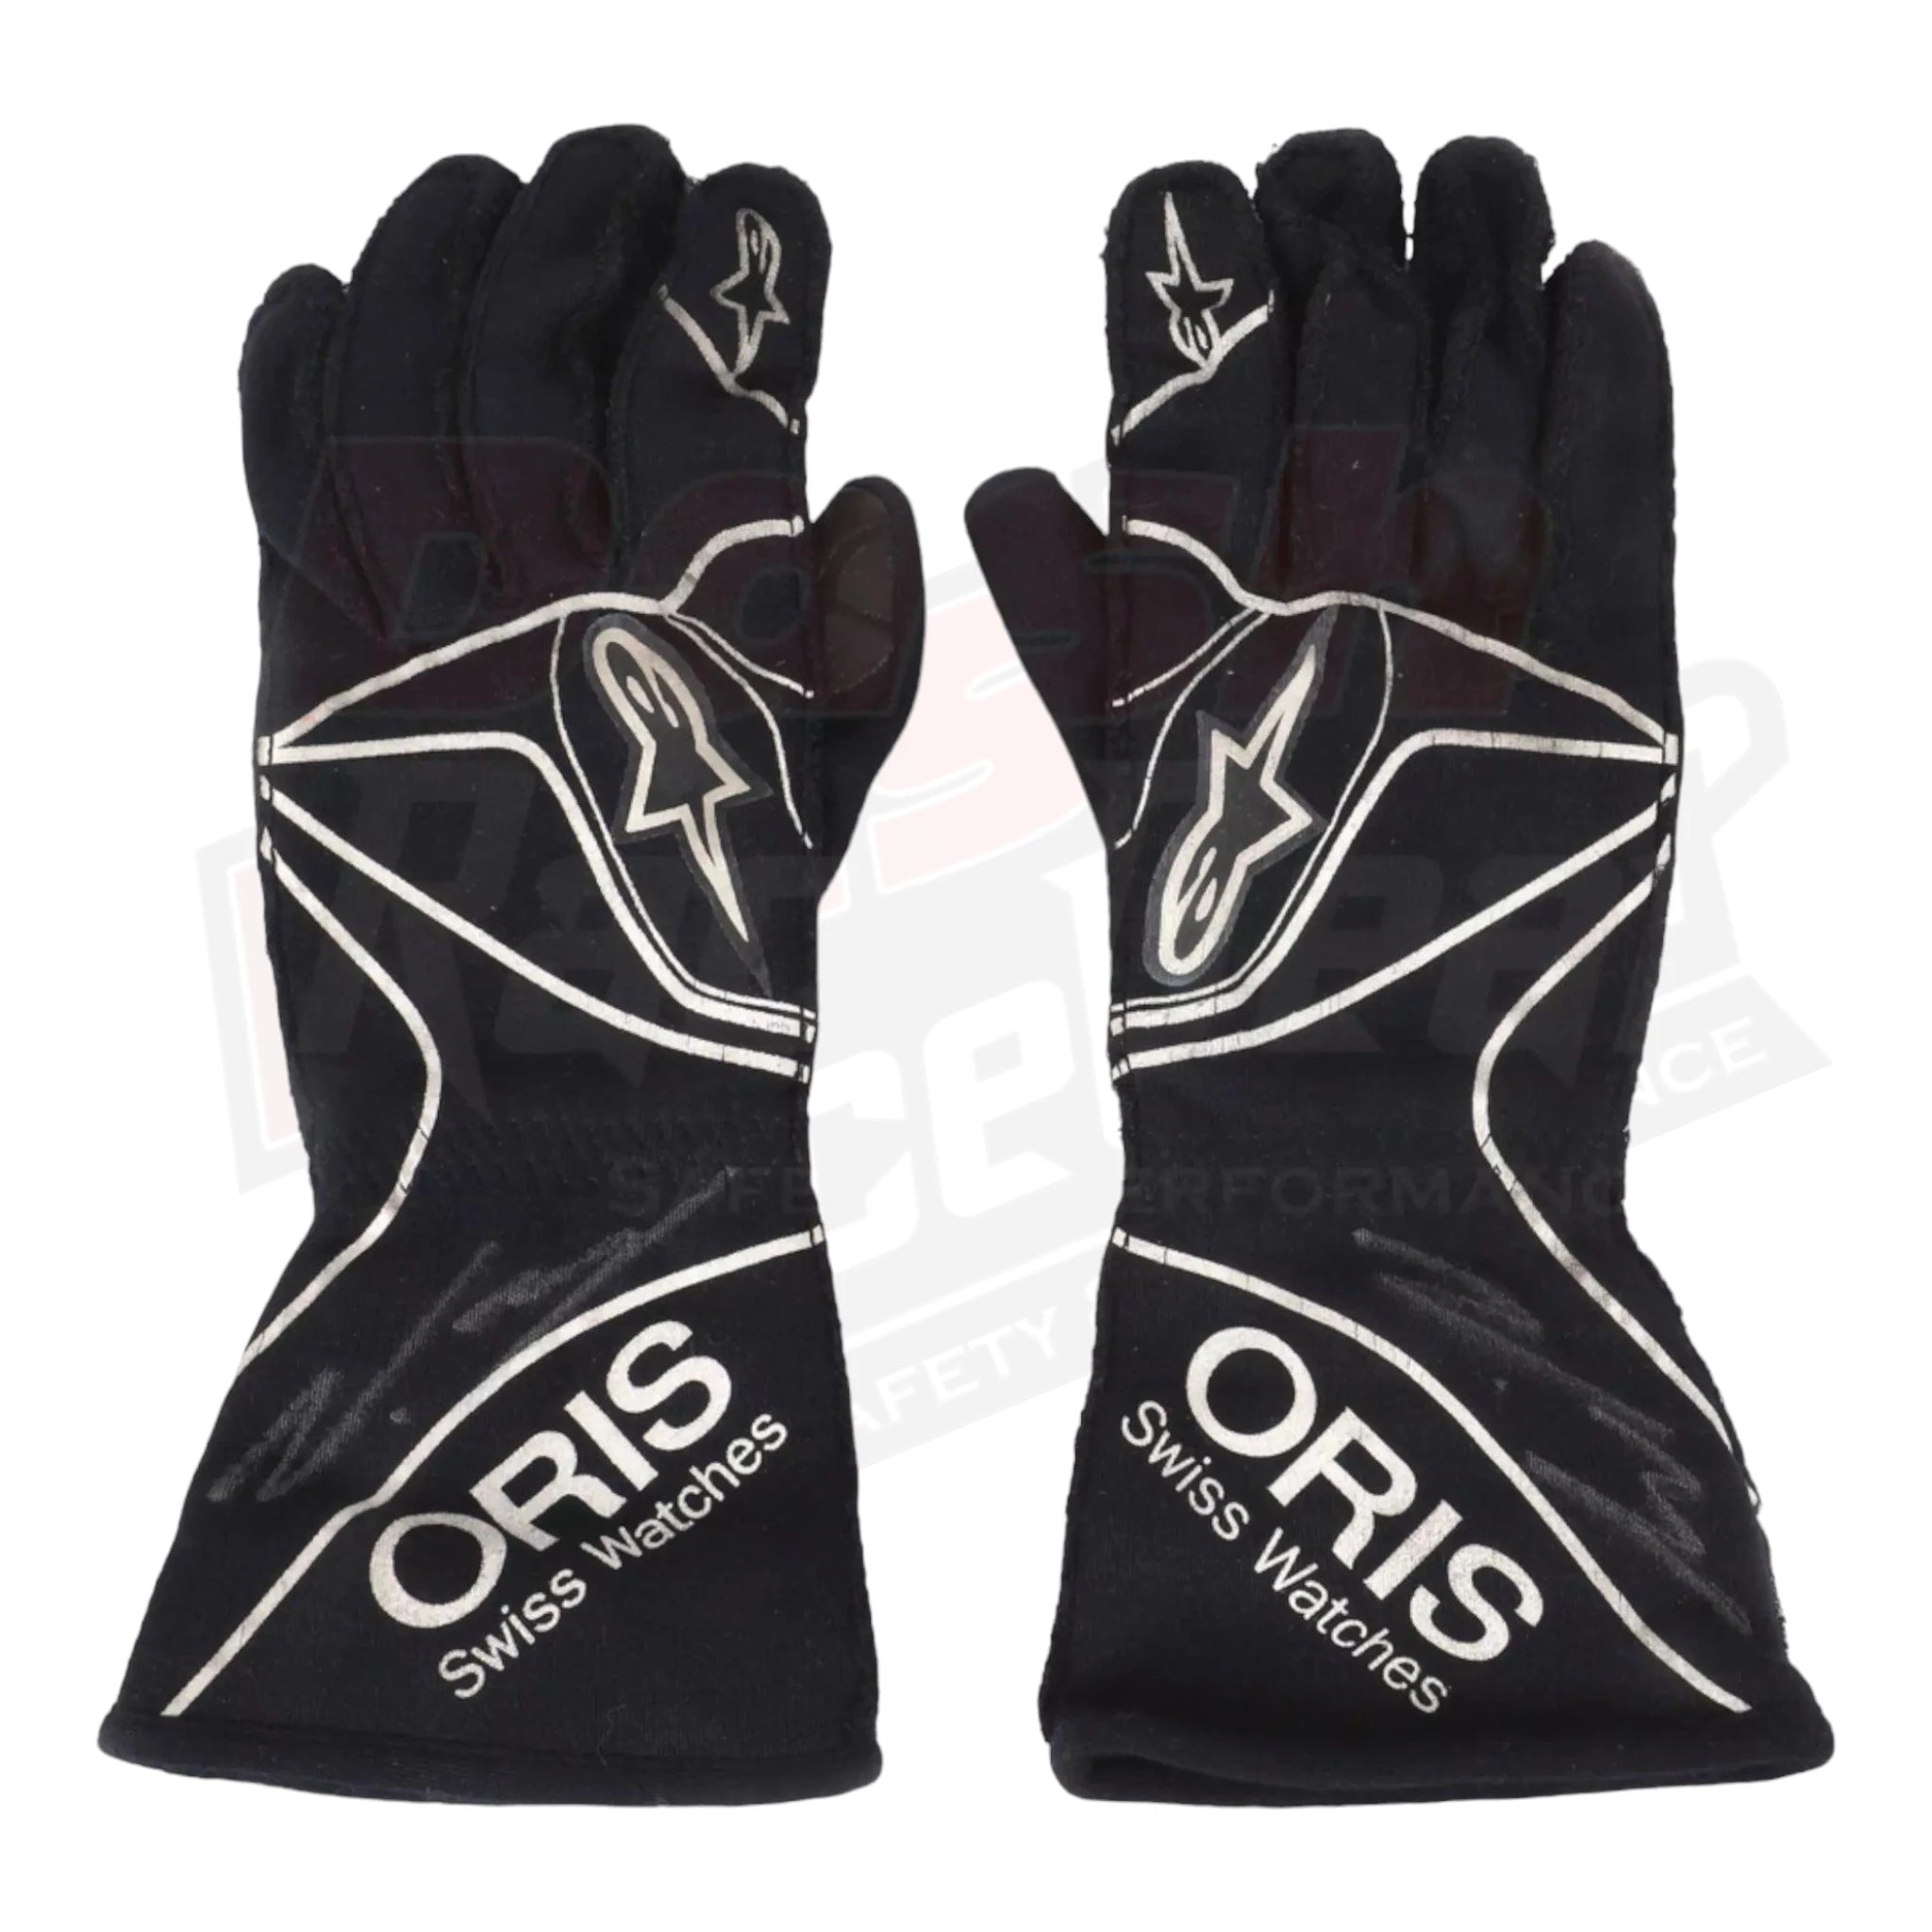 2015 Valtteri Bottas F1 Race Gloves